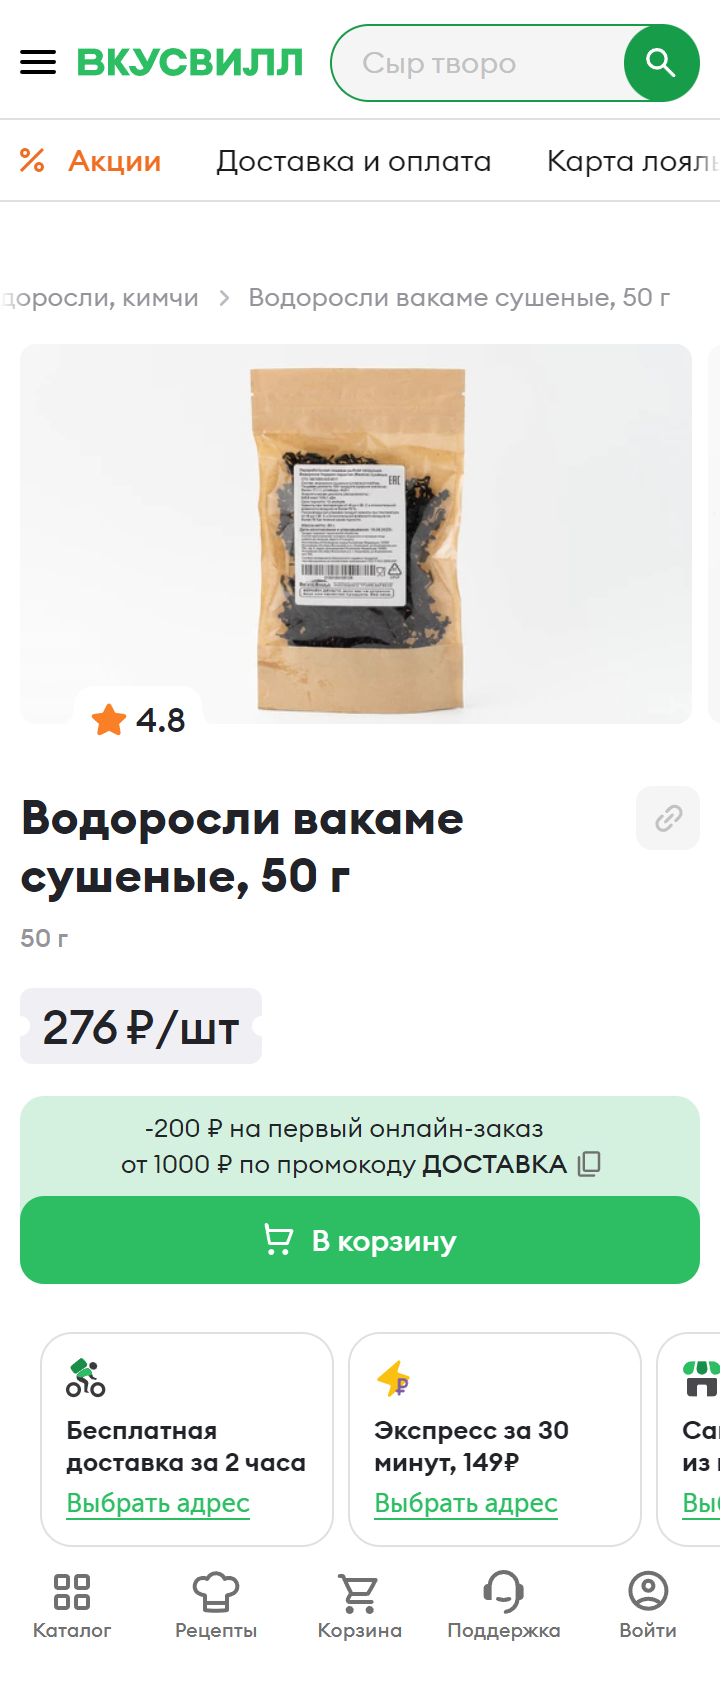 Сушеные водоросли вакаме тоже можно найти в супермаркетах. Источник: vkusvill.ru